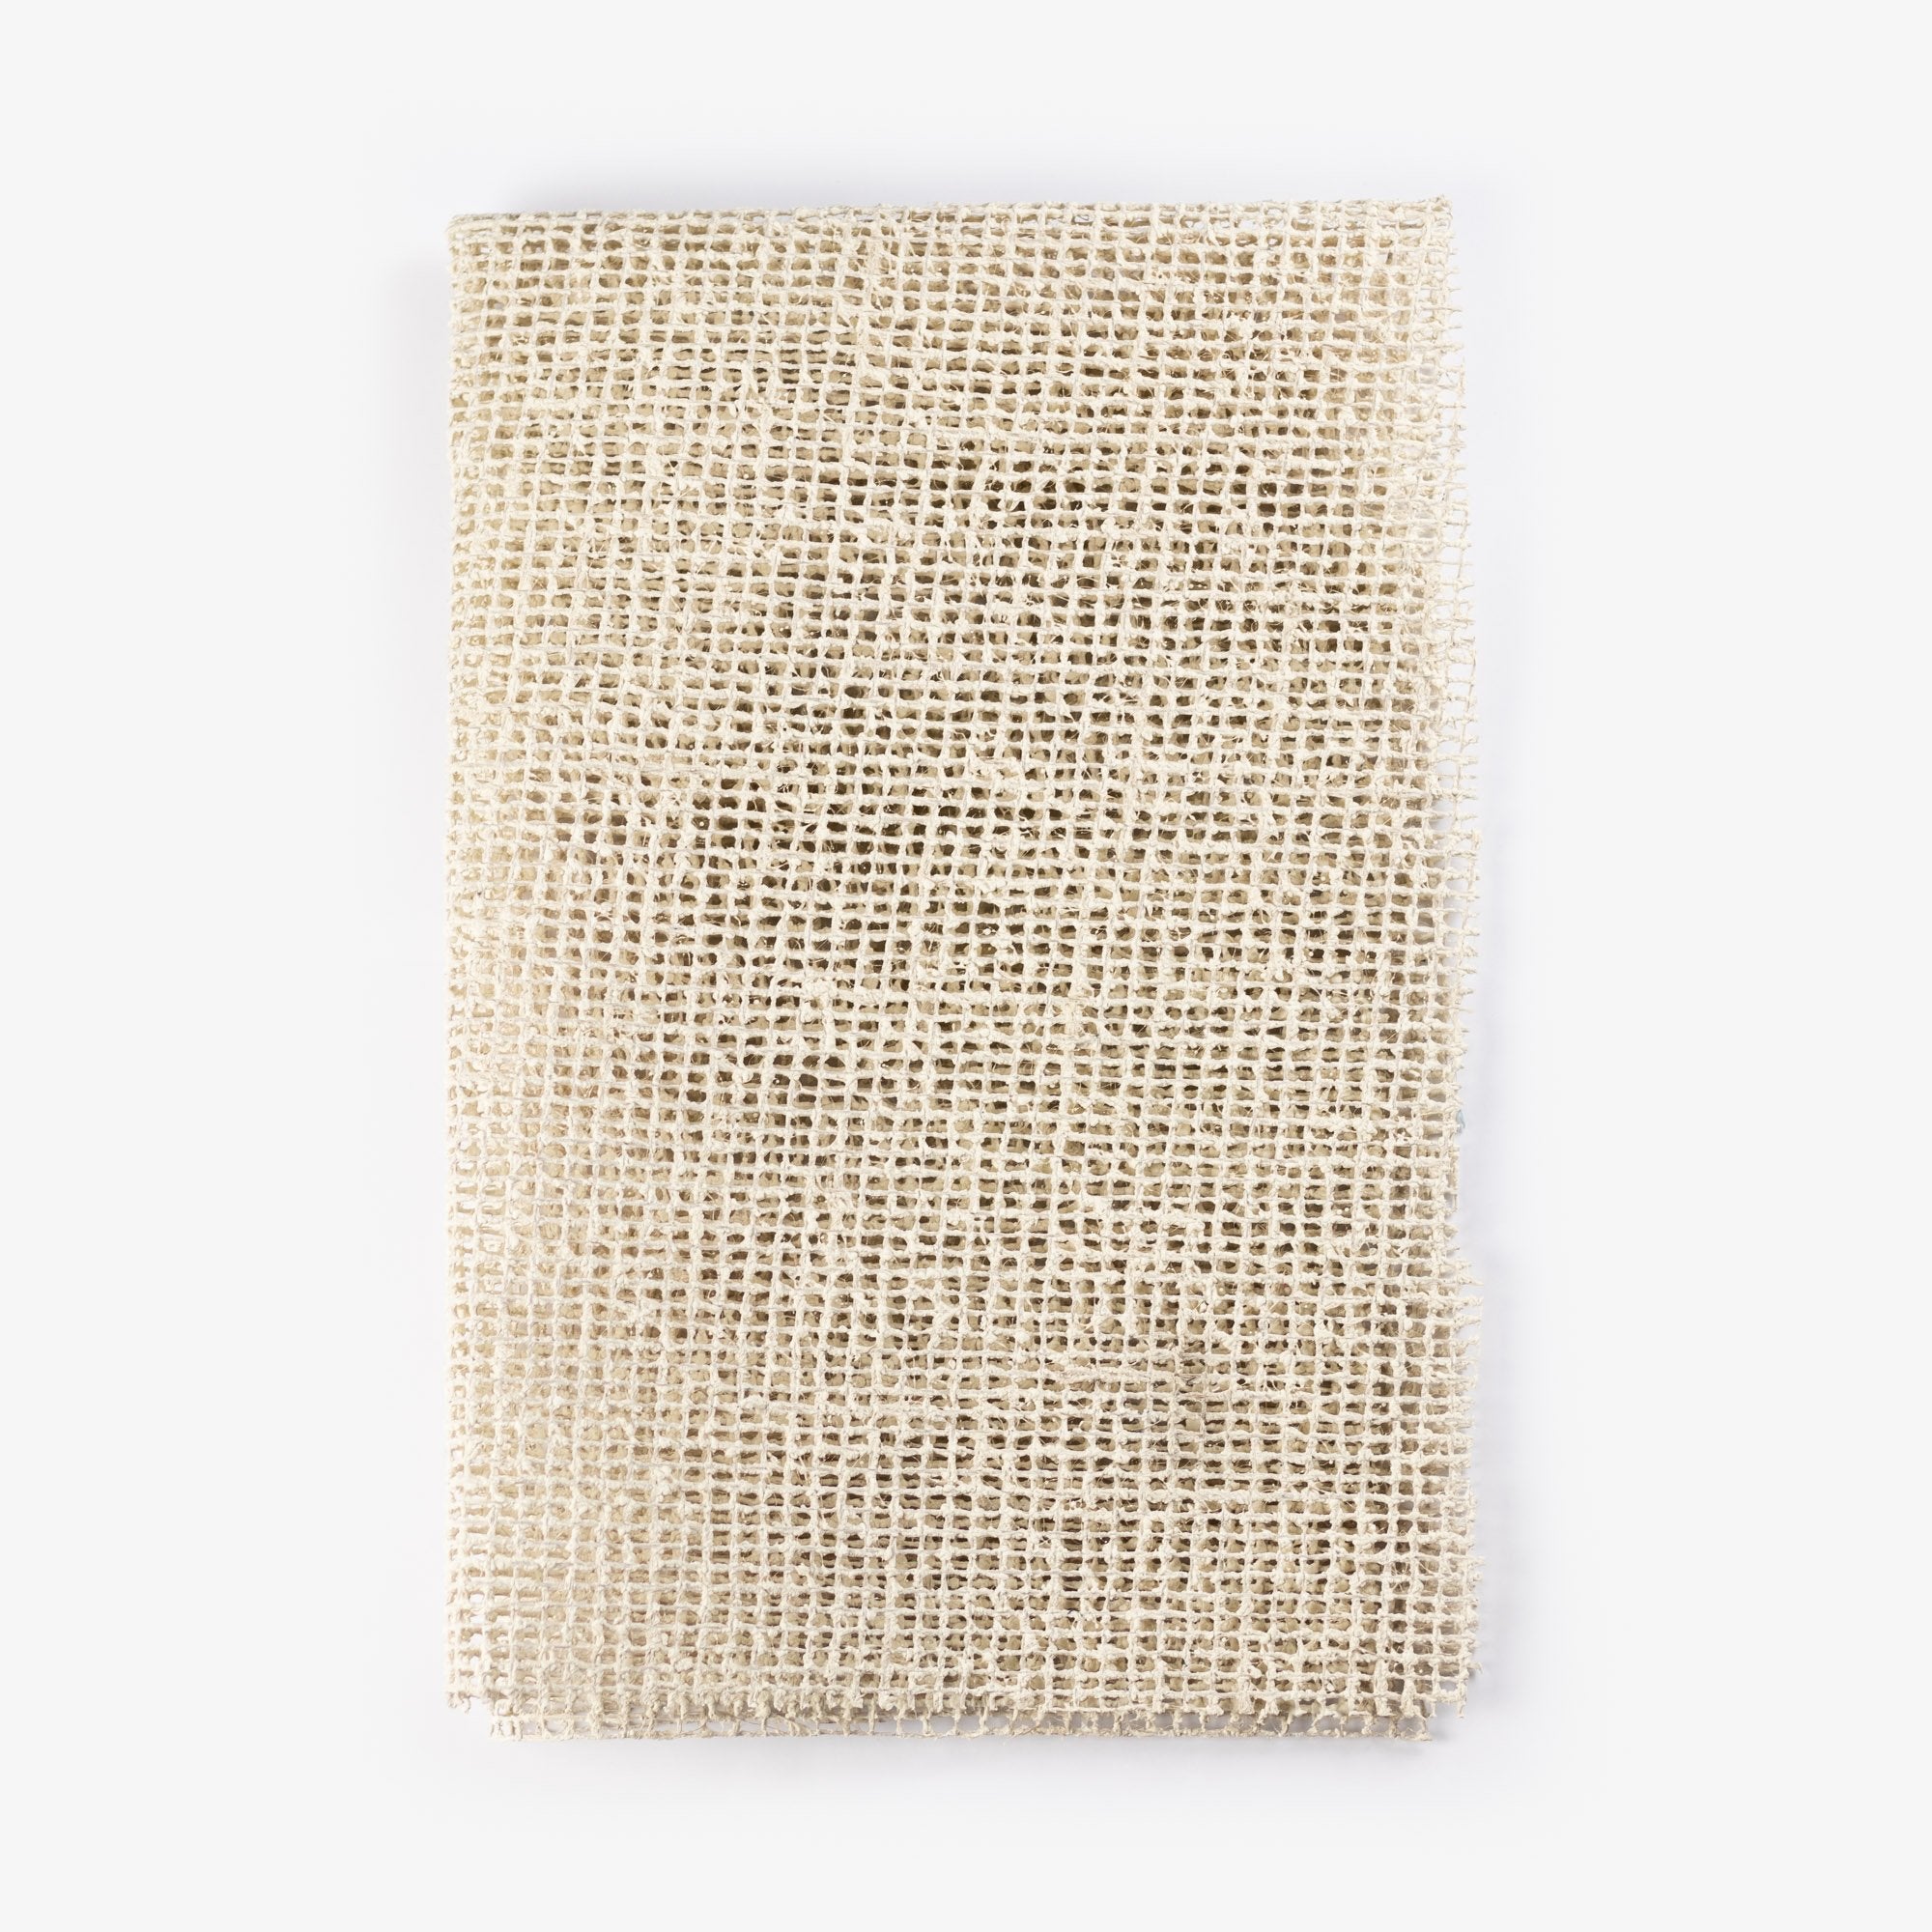 Tappeto tappeto anti -slittamento in lattice organico e iuta, 70 x 190 cm